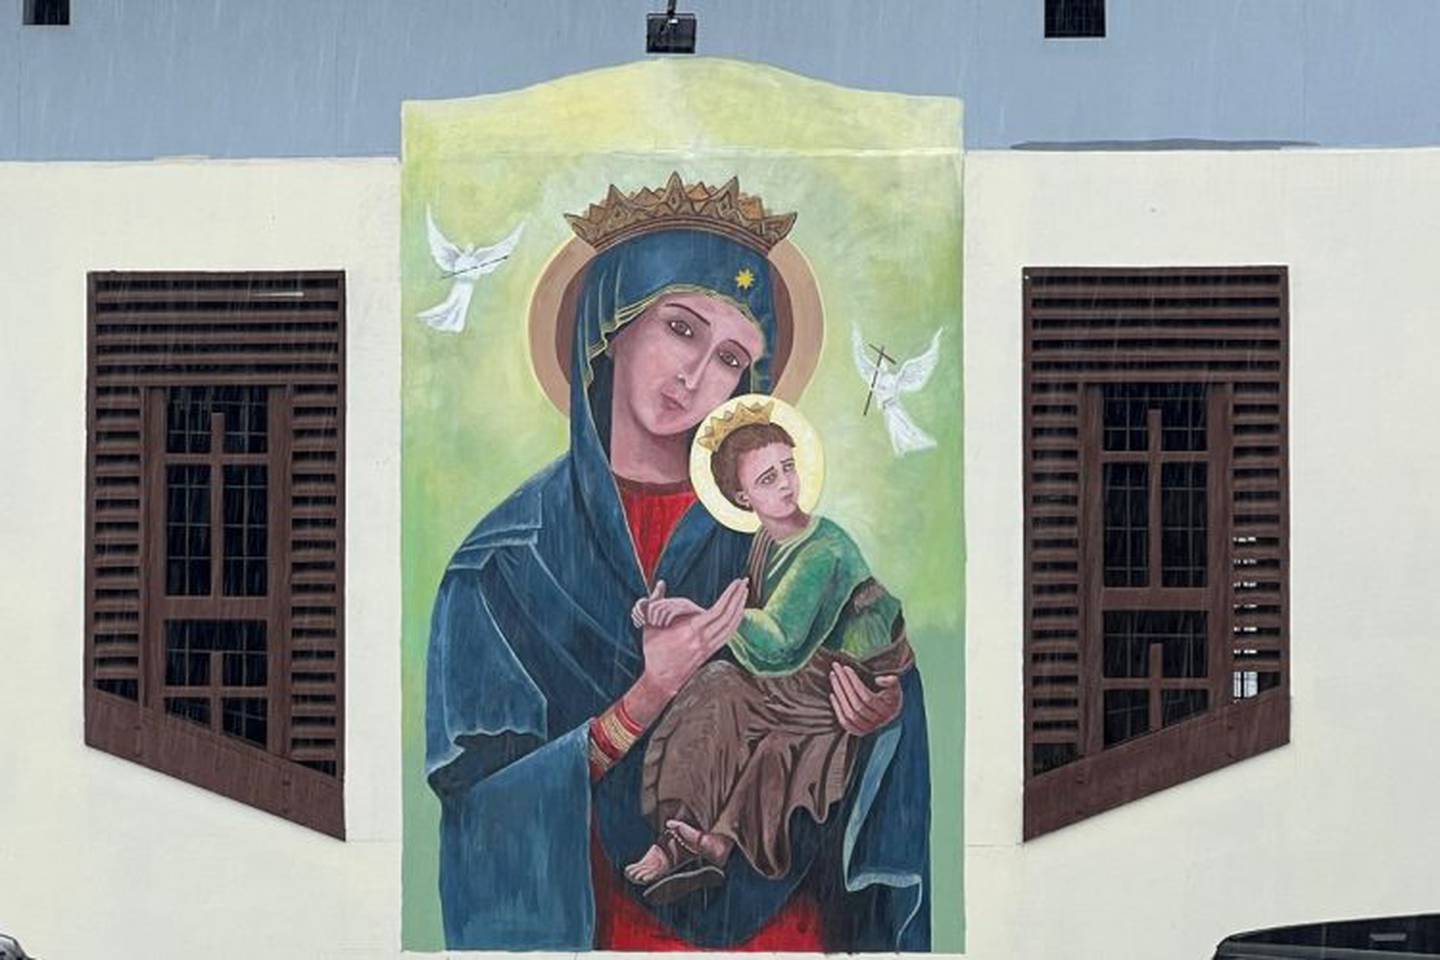 Una belleza de pintura recibe ahora a los feligreses que visitan el templo Nuestra Señora del Perpetuo Socorro, en Florencia de San Carlos.